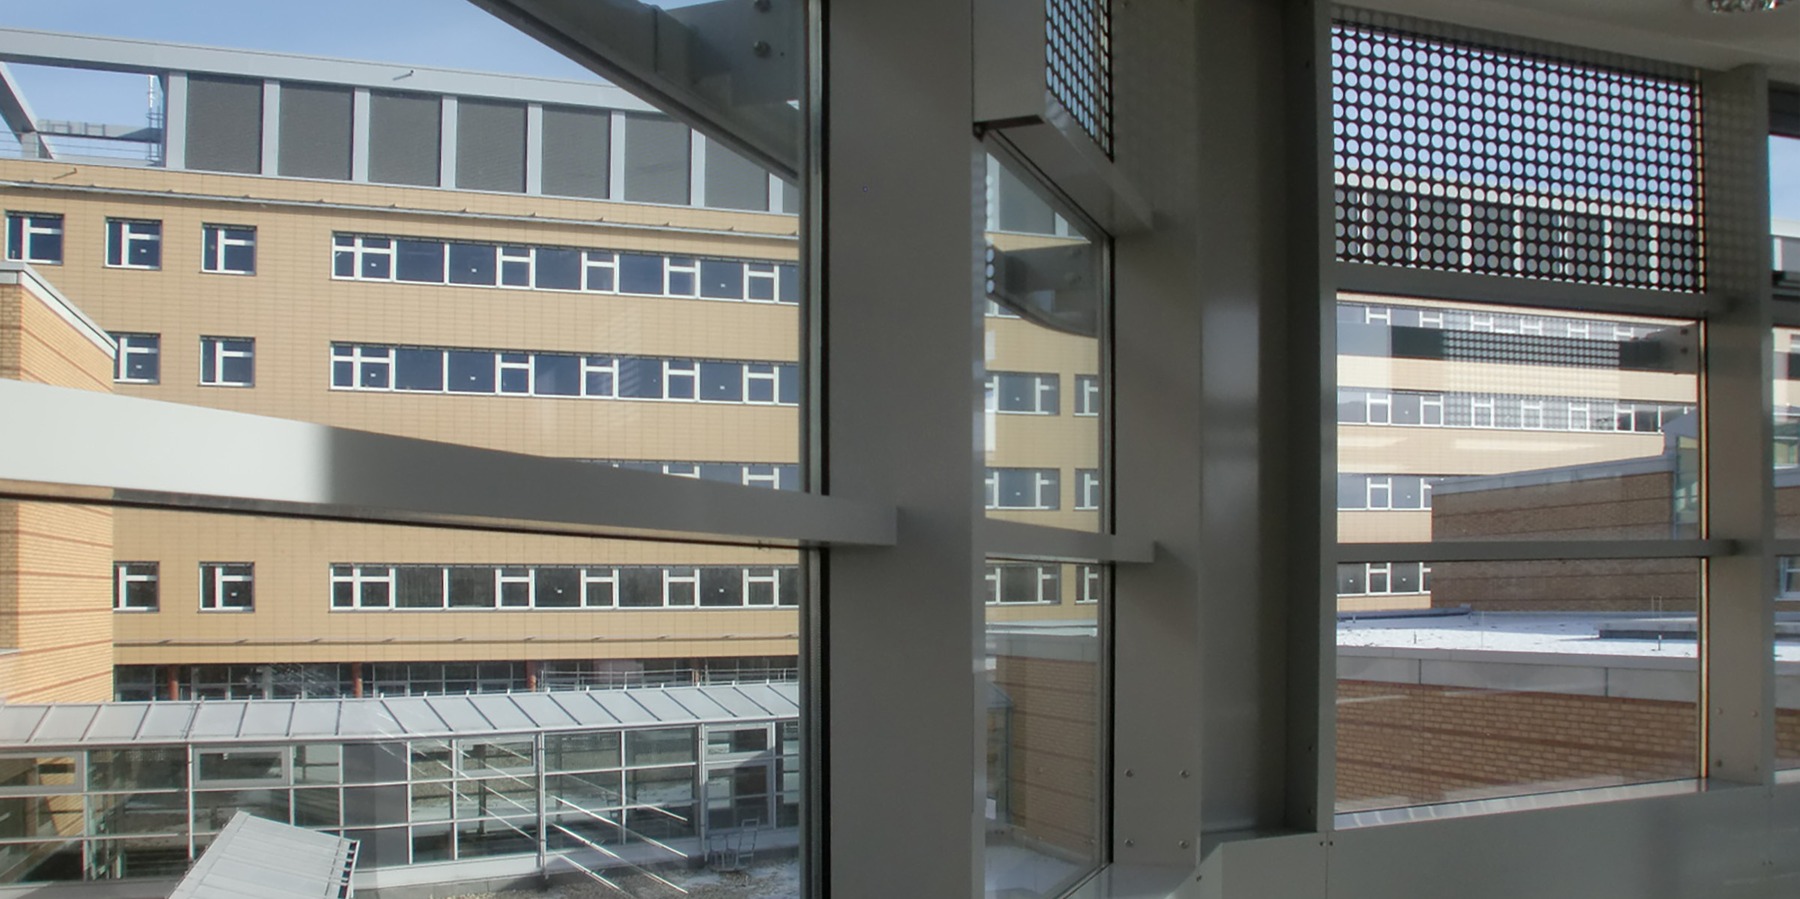 Blick vom 2. Bauabschnitt auf das Diagnostikzentrum DZ 7 - dem Kern des Klinikums © 2012 Betrieb für Bau und Liegenschaften Mecklenburg-Vorpommern